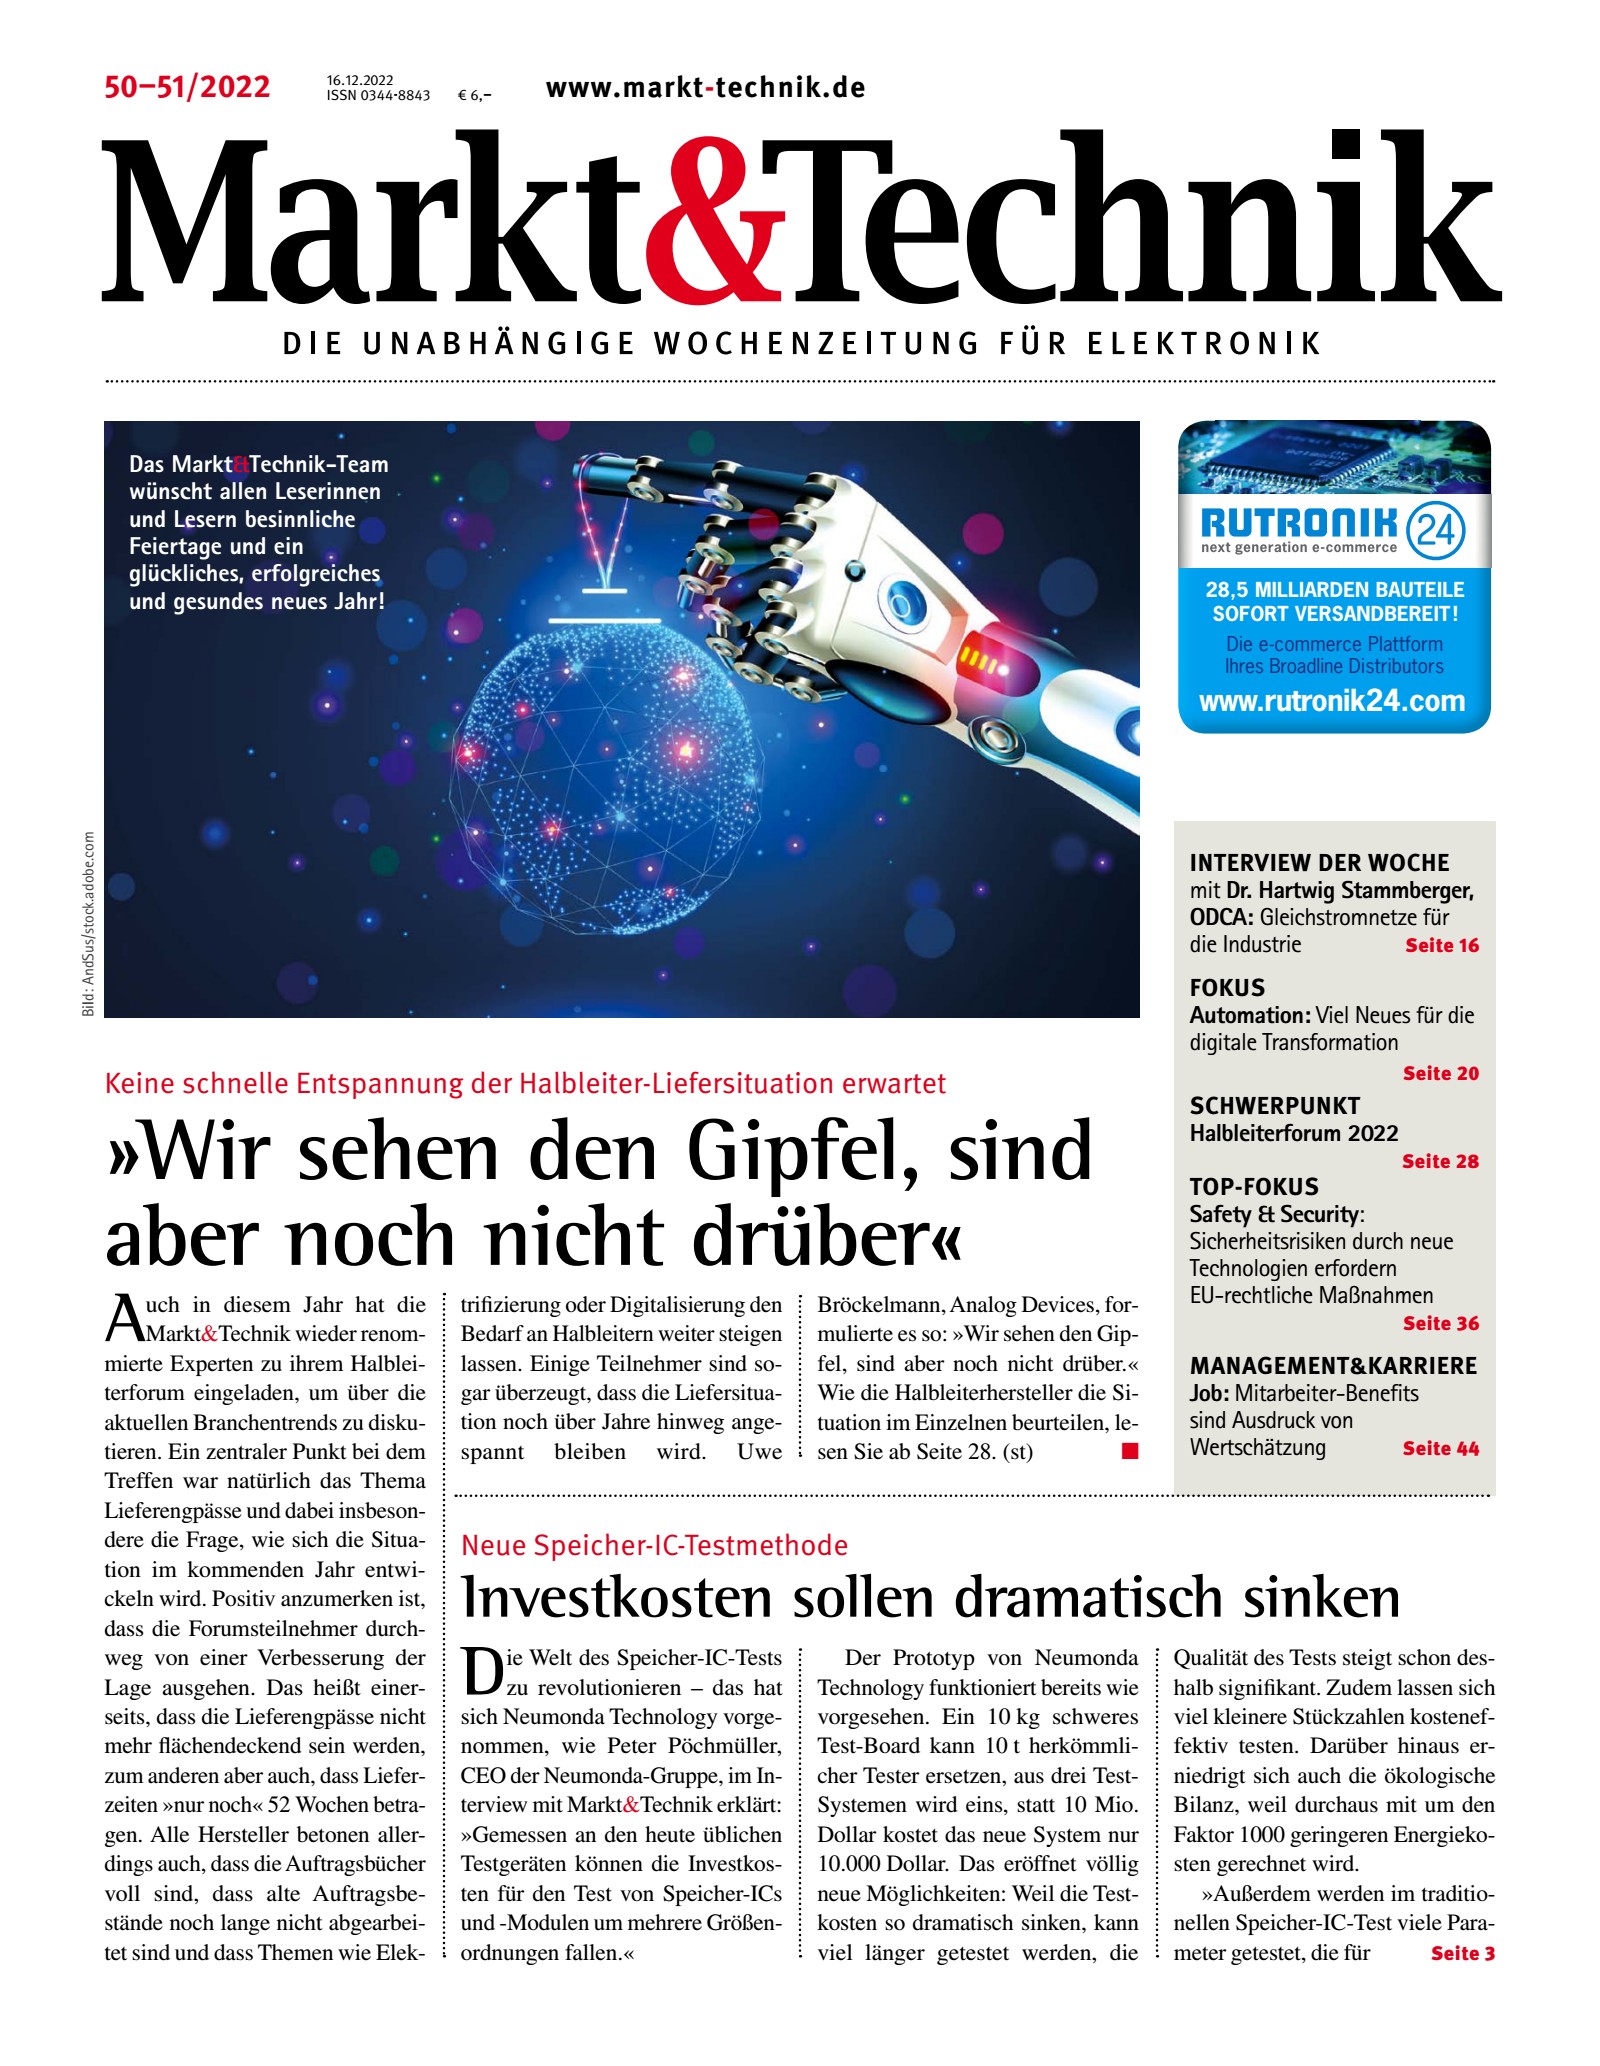 Markt&Technik 50-51/22 Digital